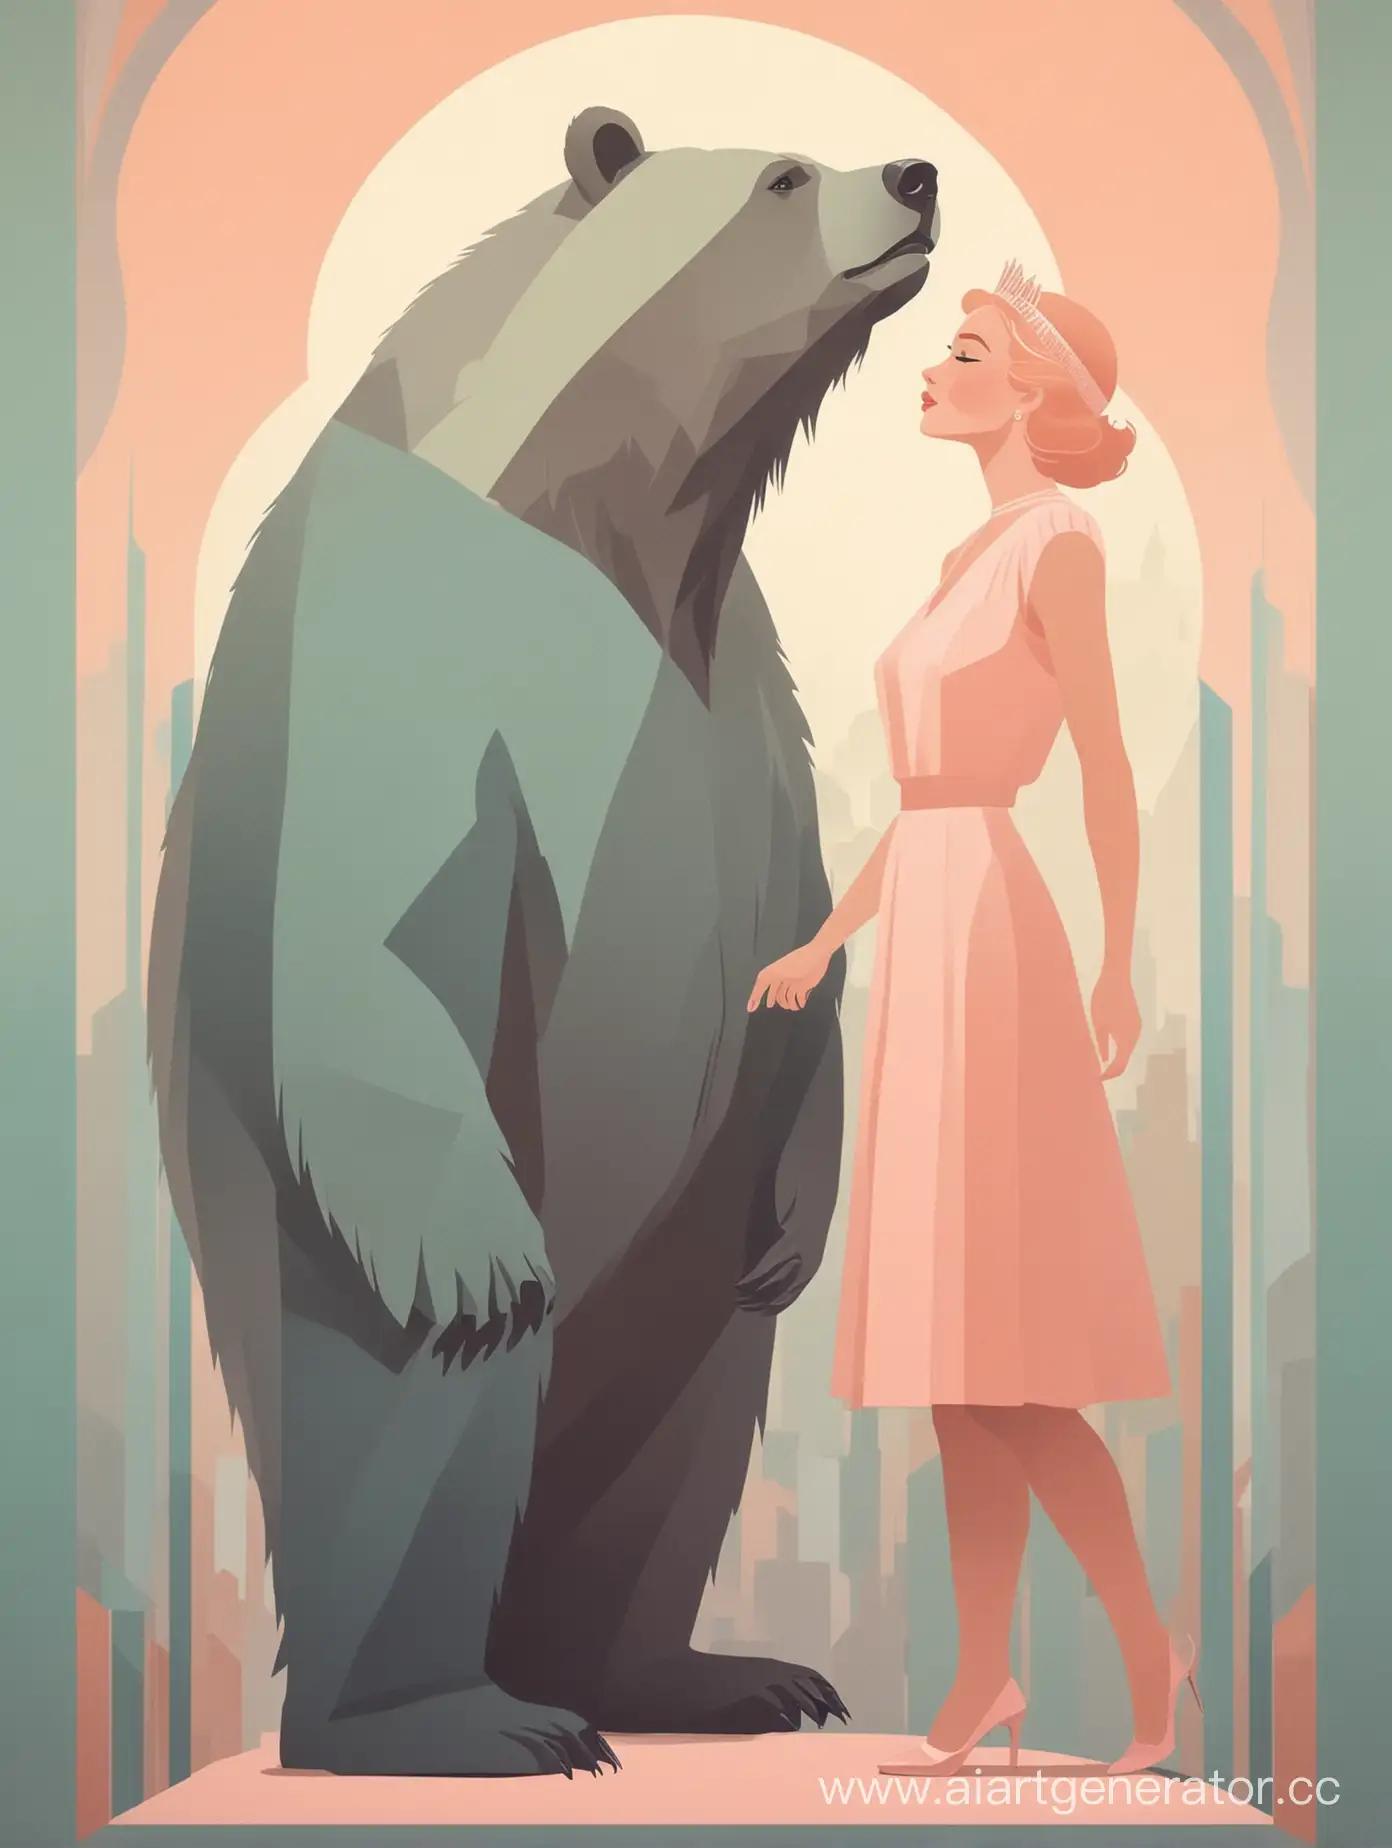 постер в стиле арт деко в пастельных цветах минимализм из тени мужчины превращается медведь и рядом принцесса 